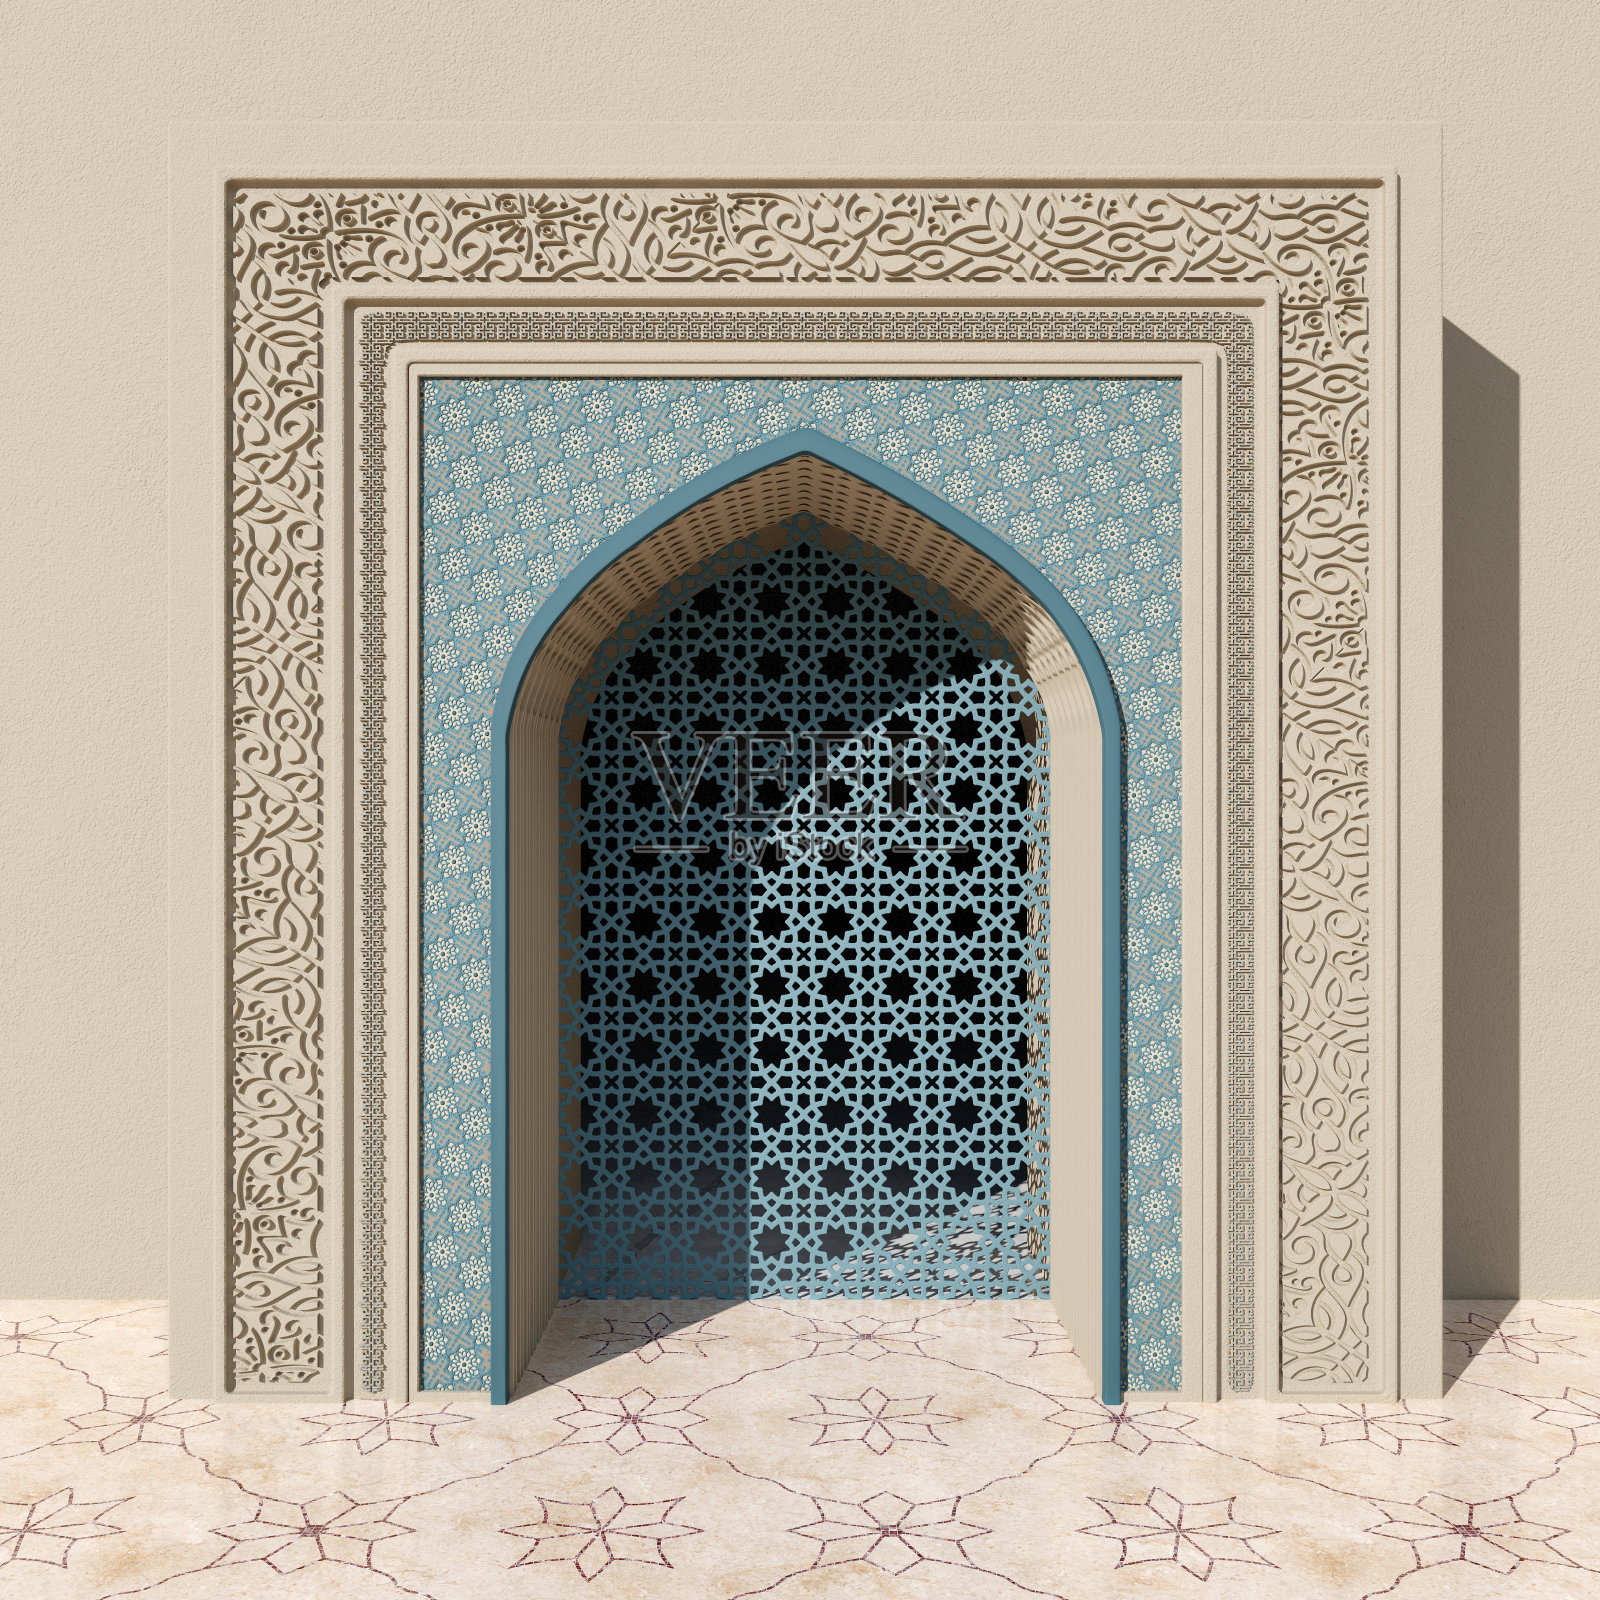 米色清真寺拱门与蓝色花卉和几何图案，石雕和镂空窗。大理石瓷砖地板上的花卉图案照片摄影图片